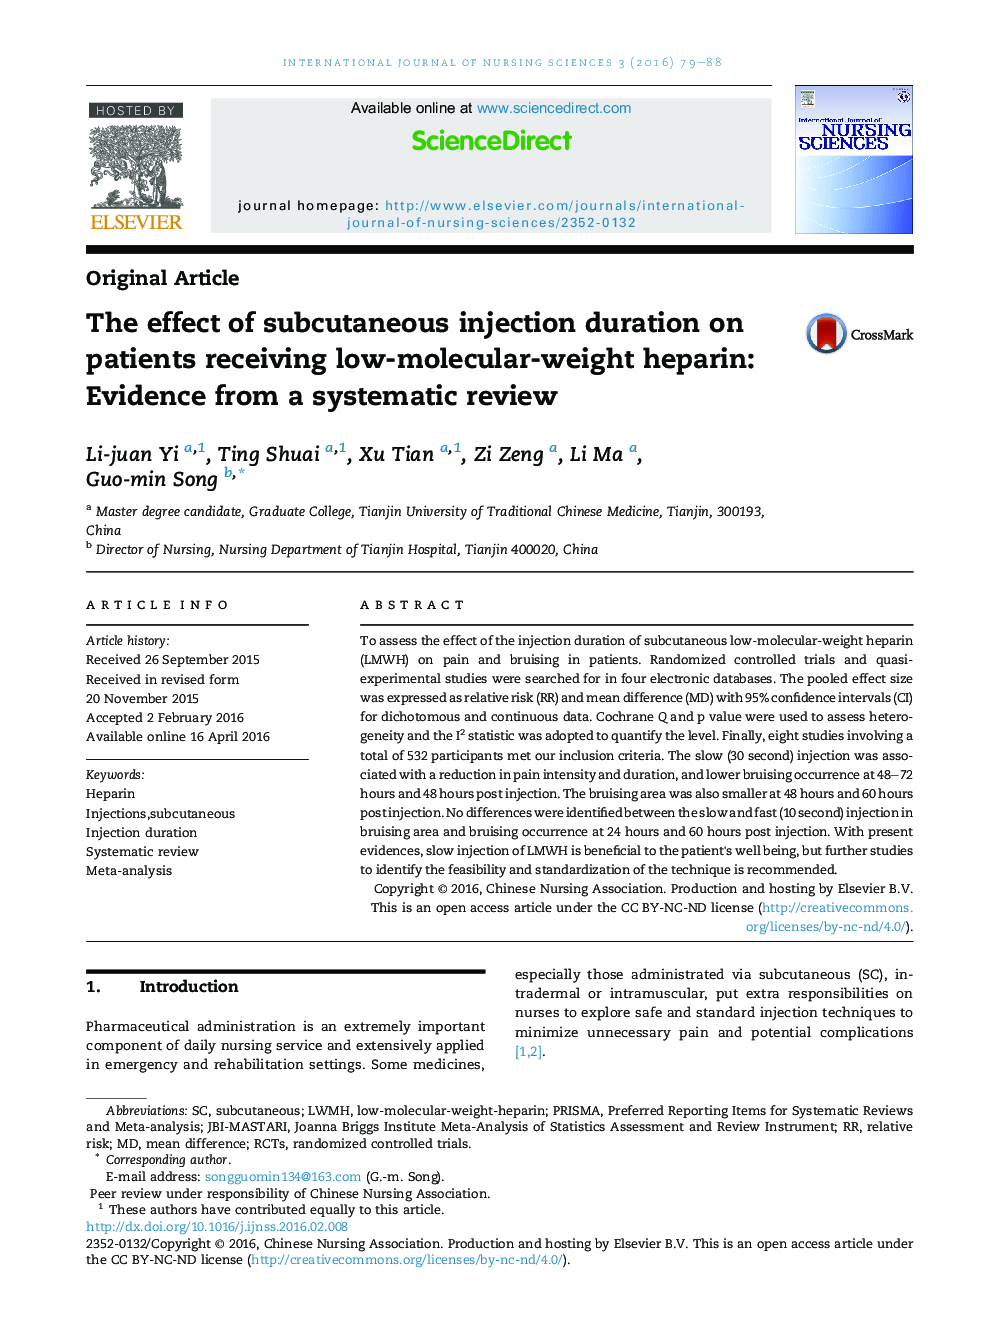 تأثیر طول مدت تزریق زیرجلدی بر بیماران مبتلا به هپارین با وزن مولکولی کم: شواهد از یک بررسی سیستماتیک